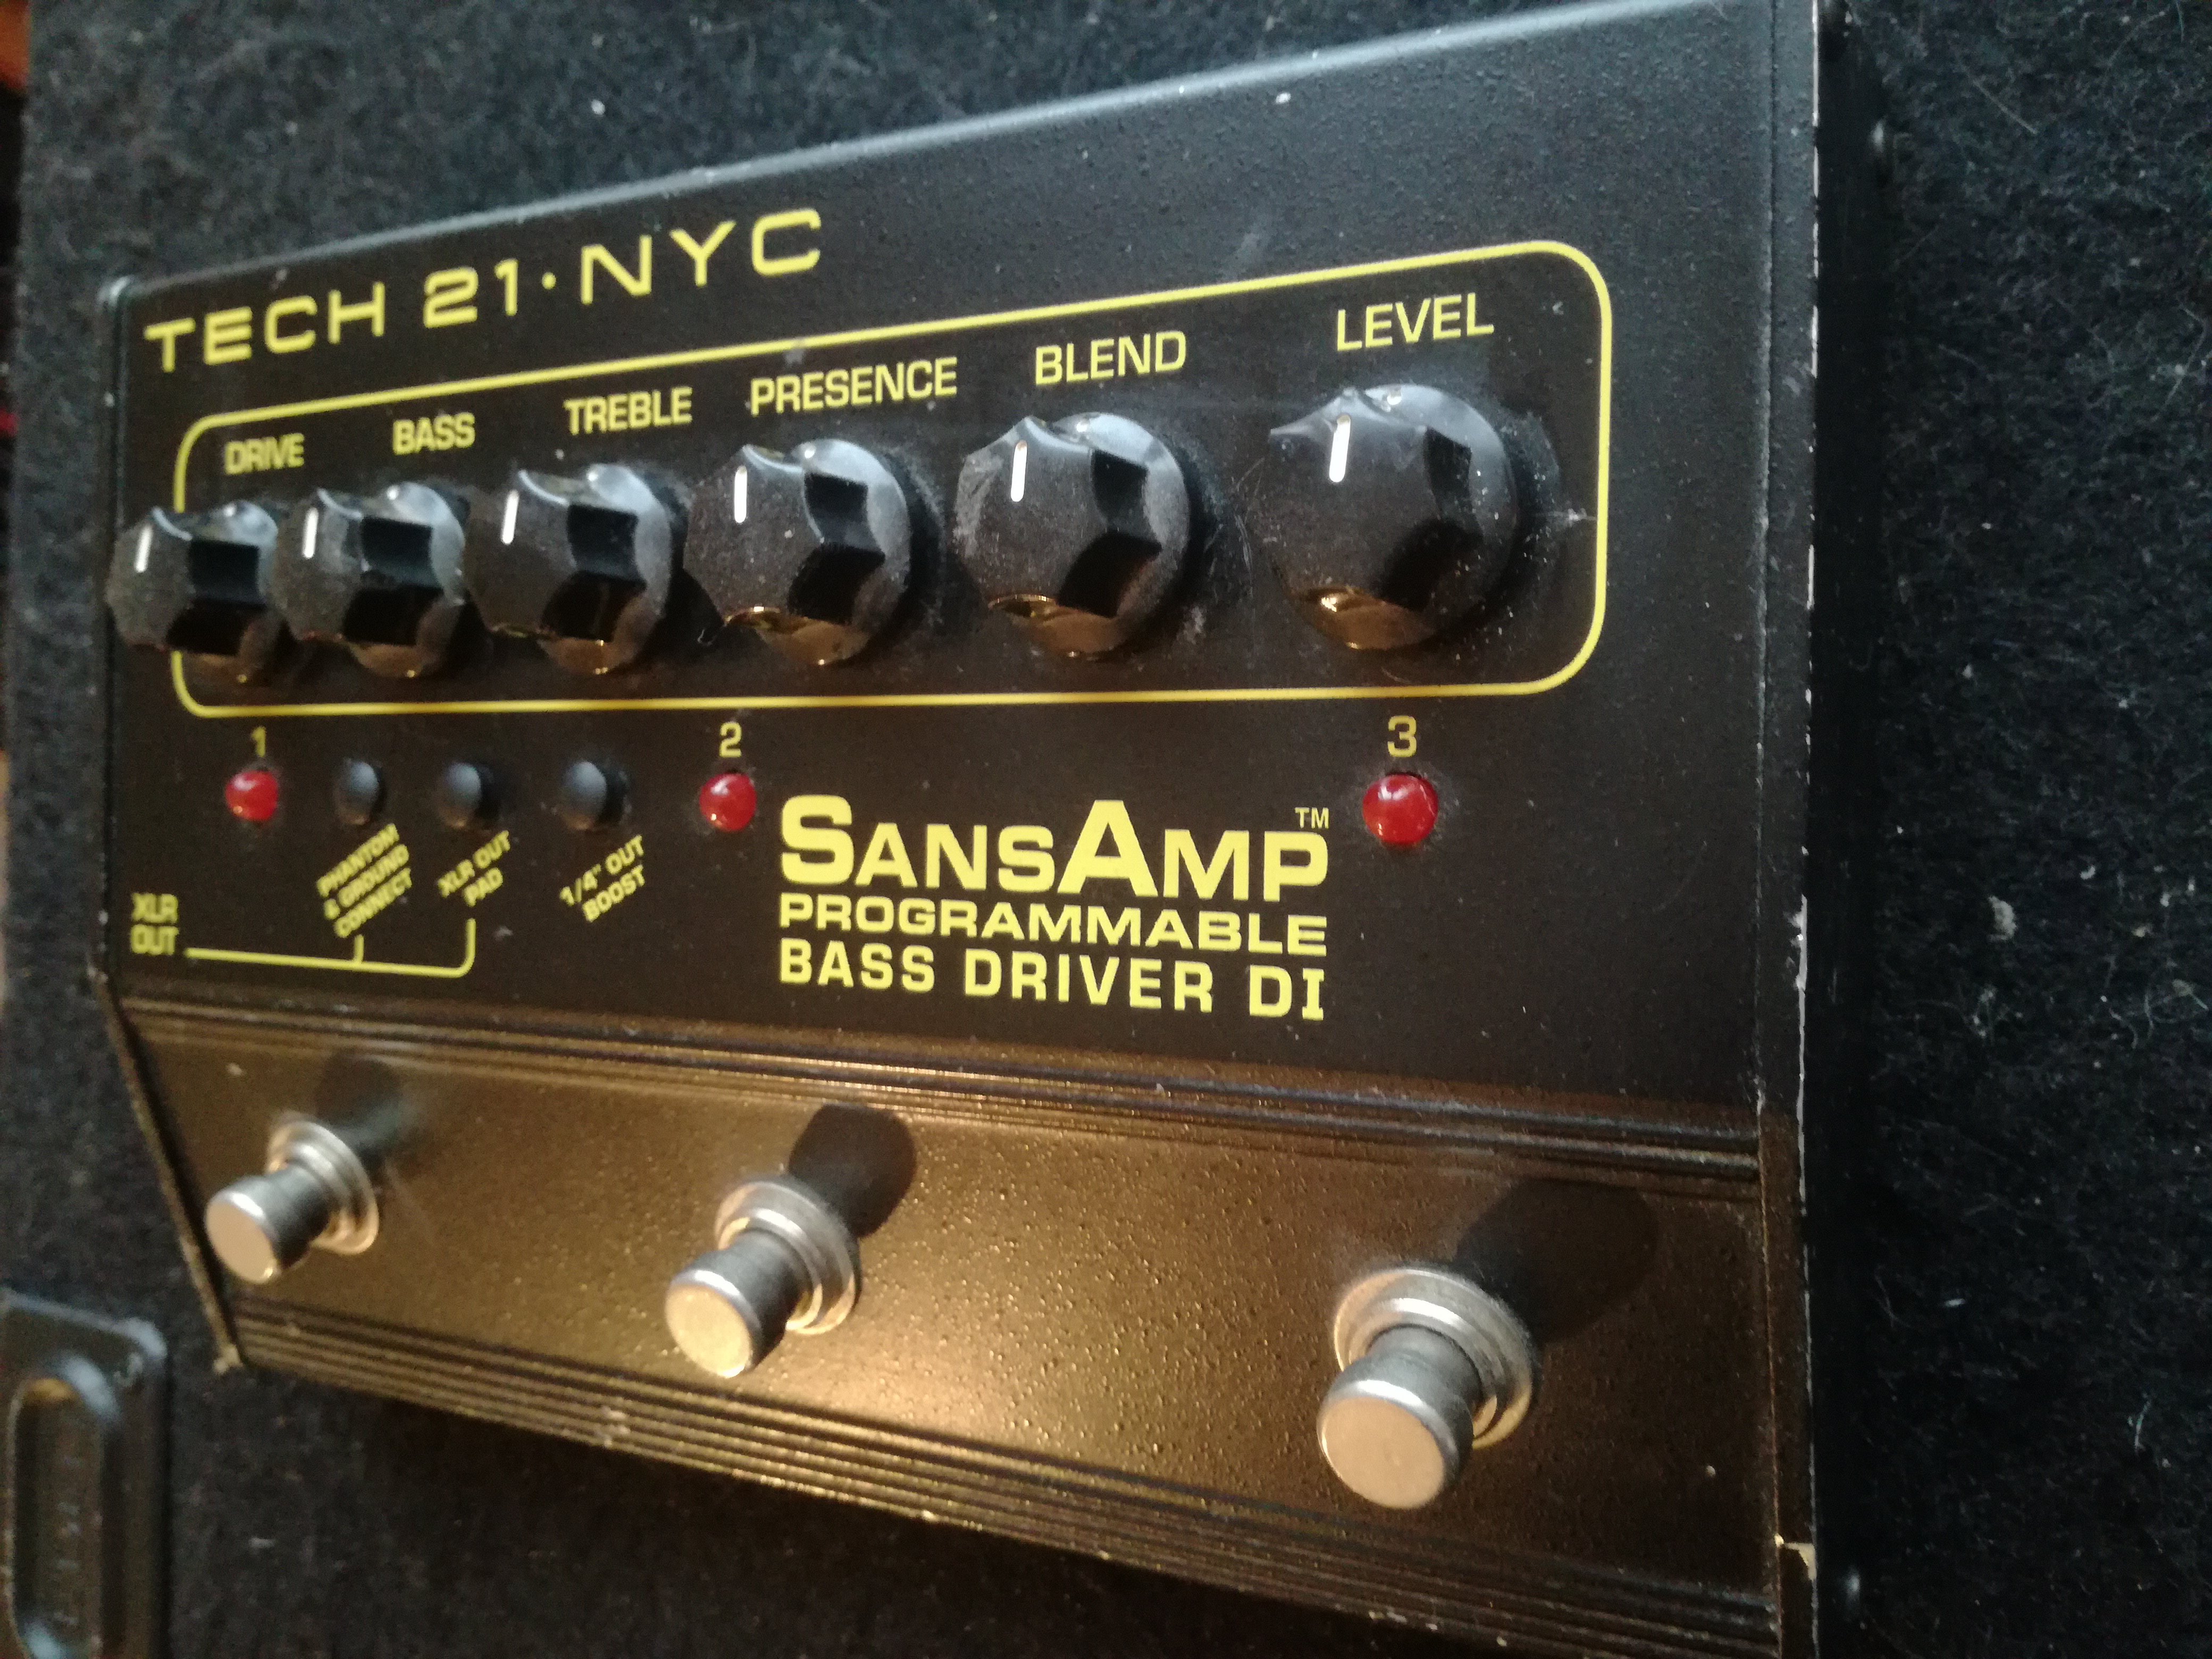 SansAmp Bass Driver DI Programmable Tech 21 - Audiofanzine